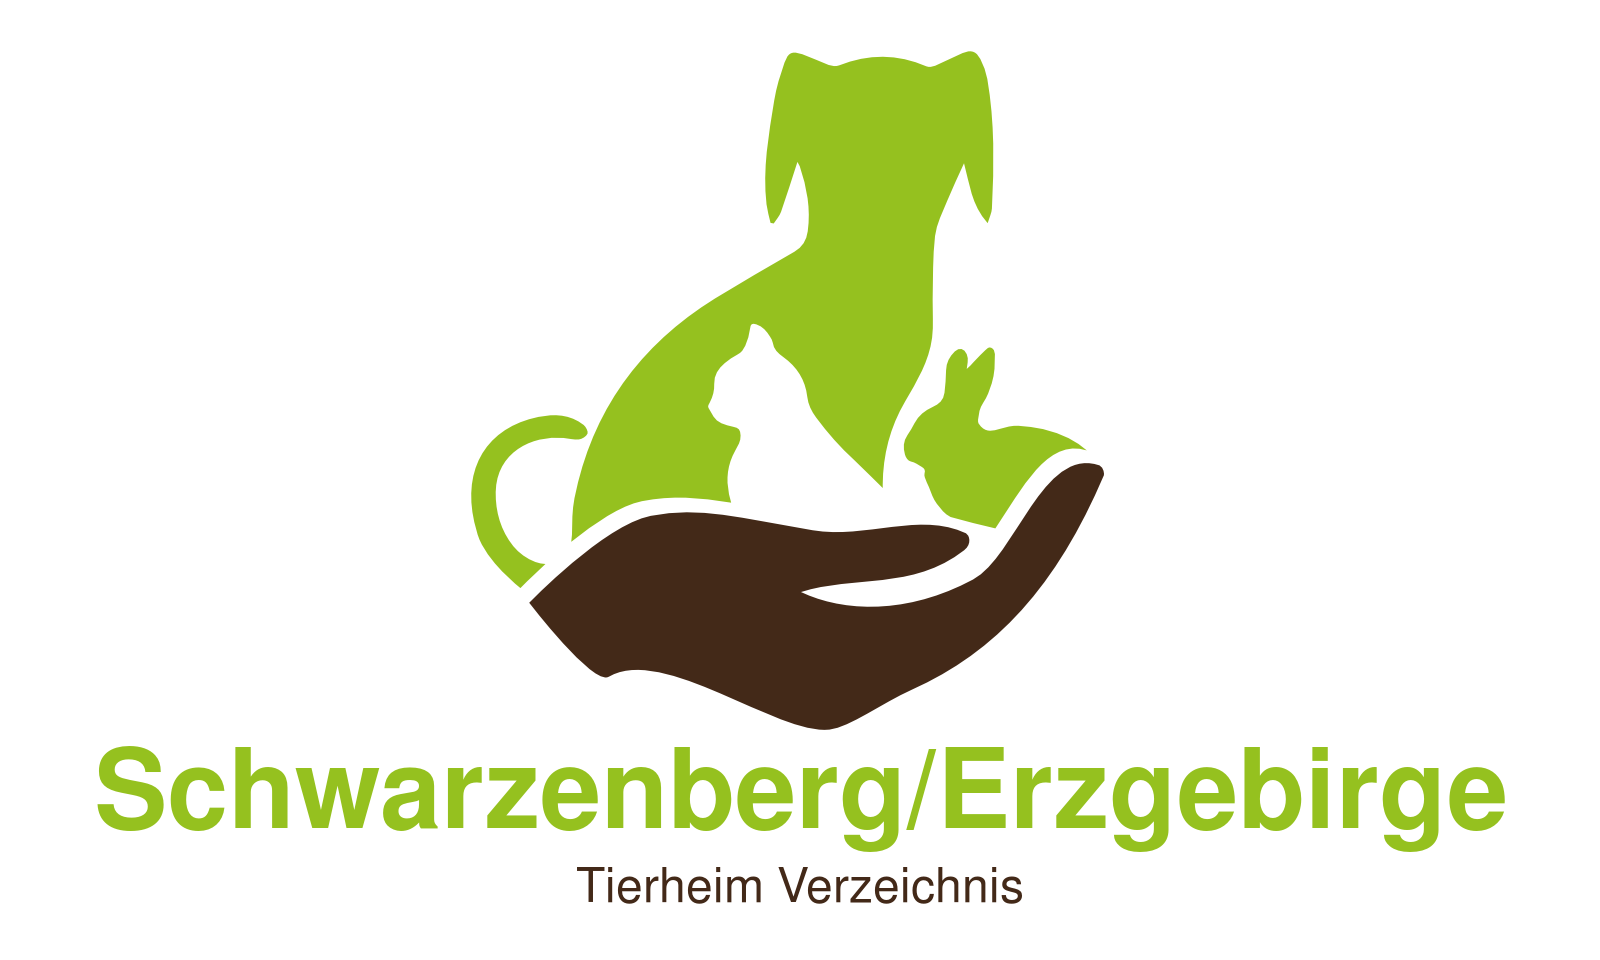 Tierheim Schwarzenberg/Erzgebirge